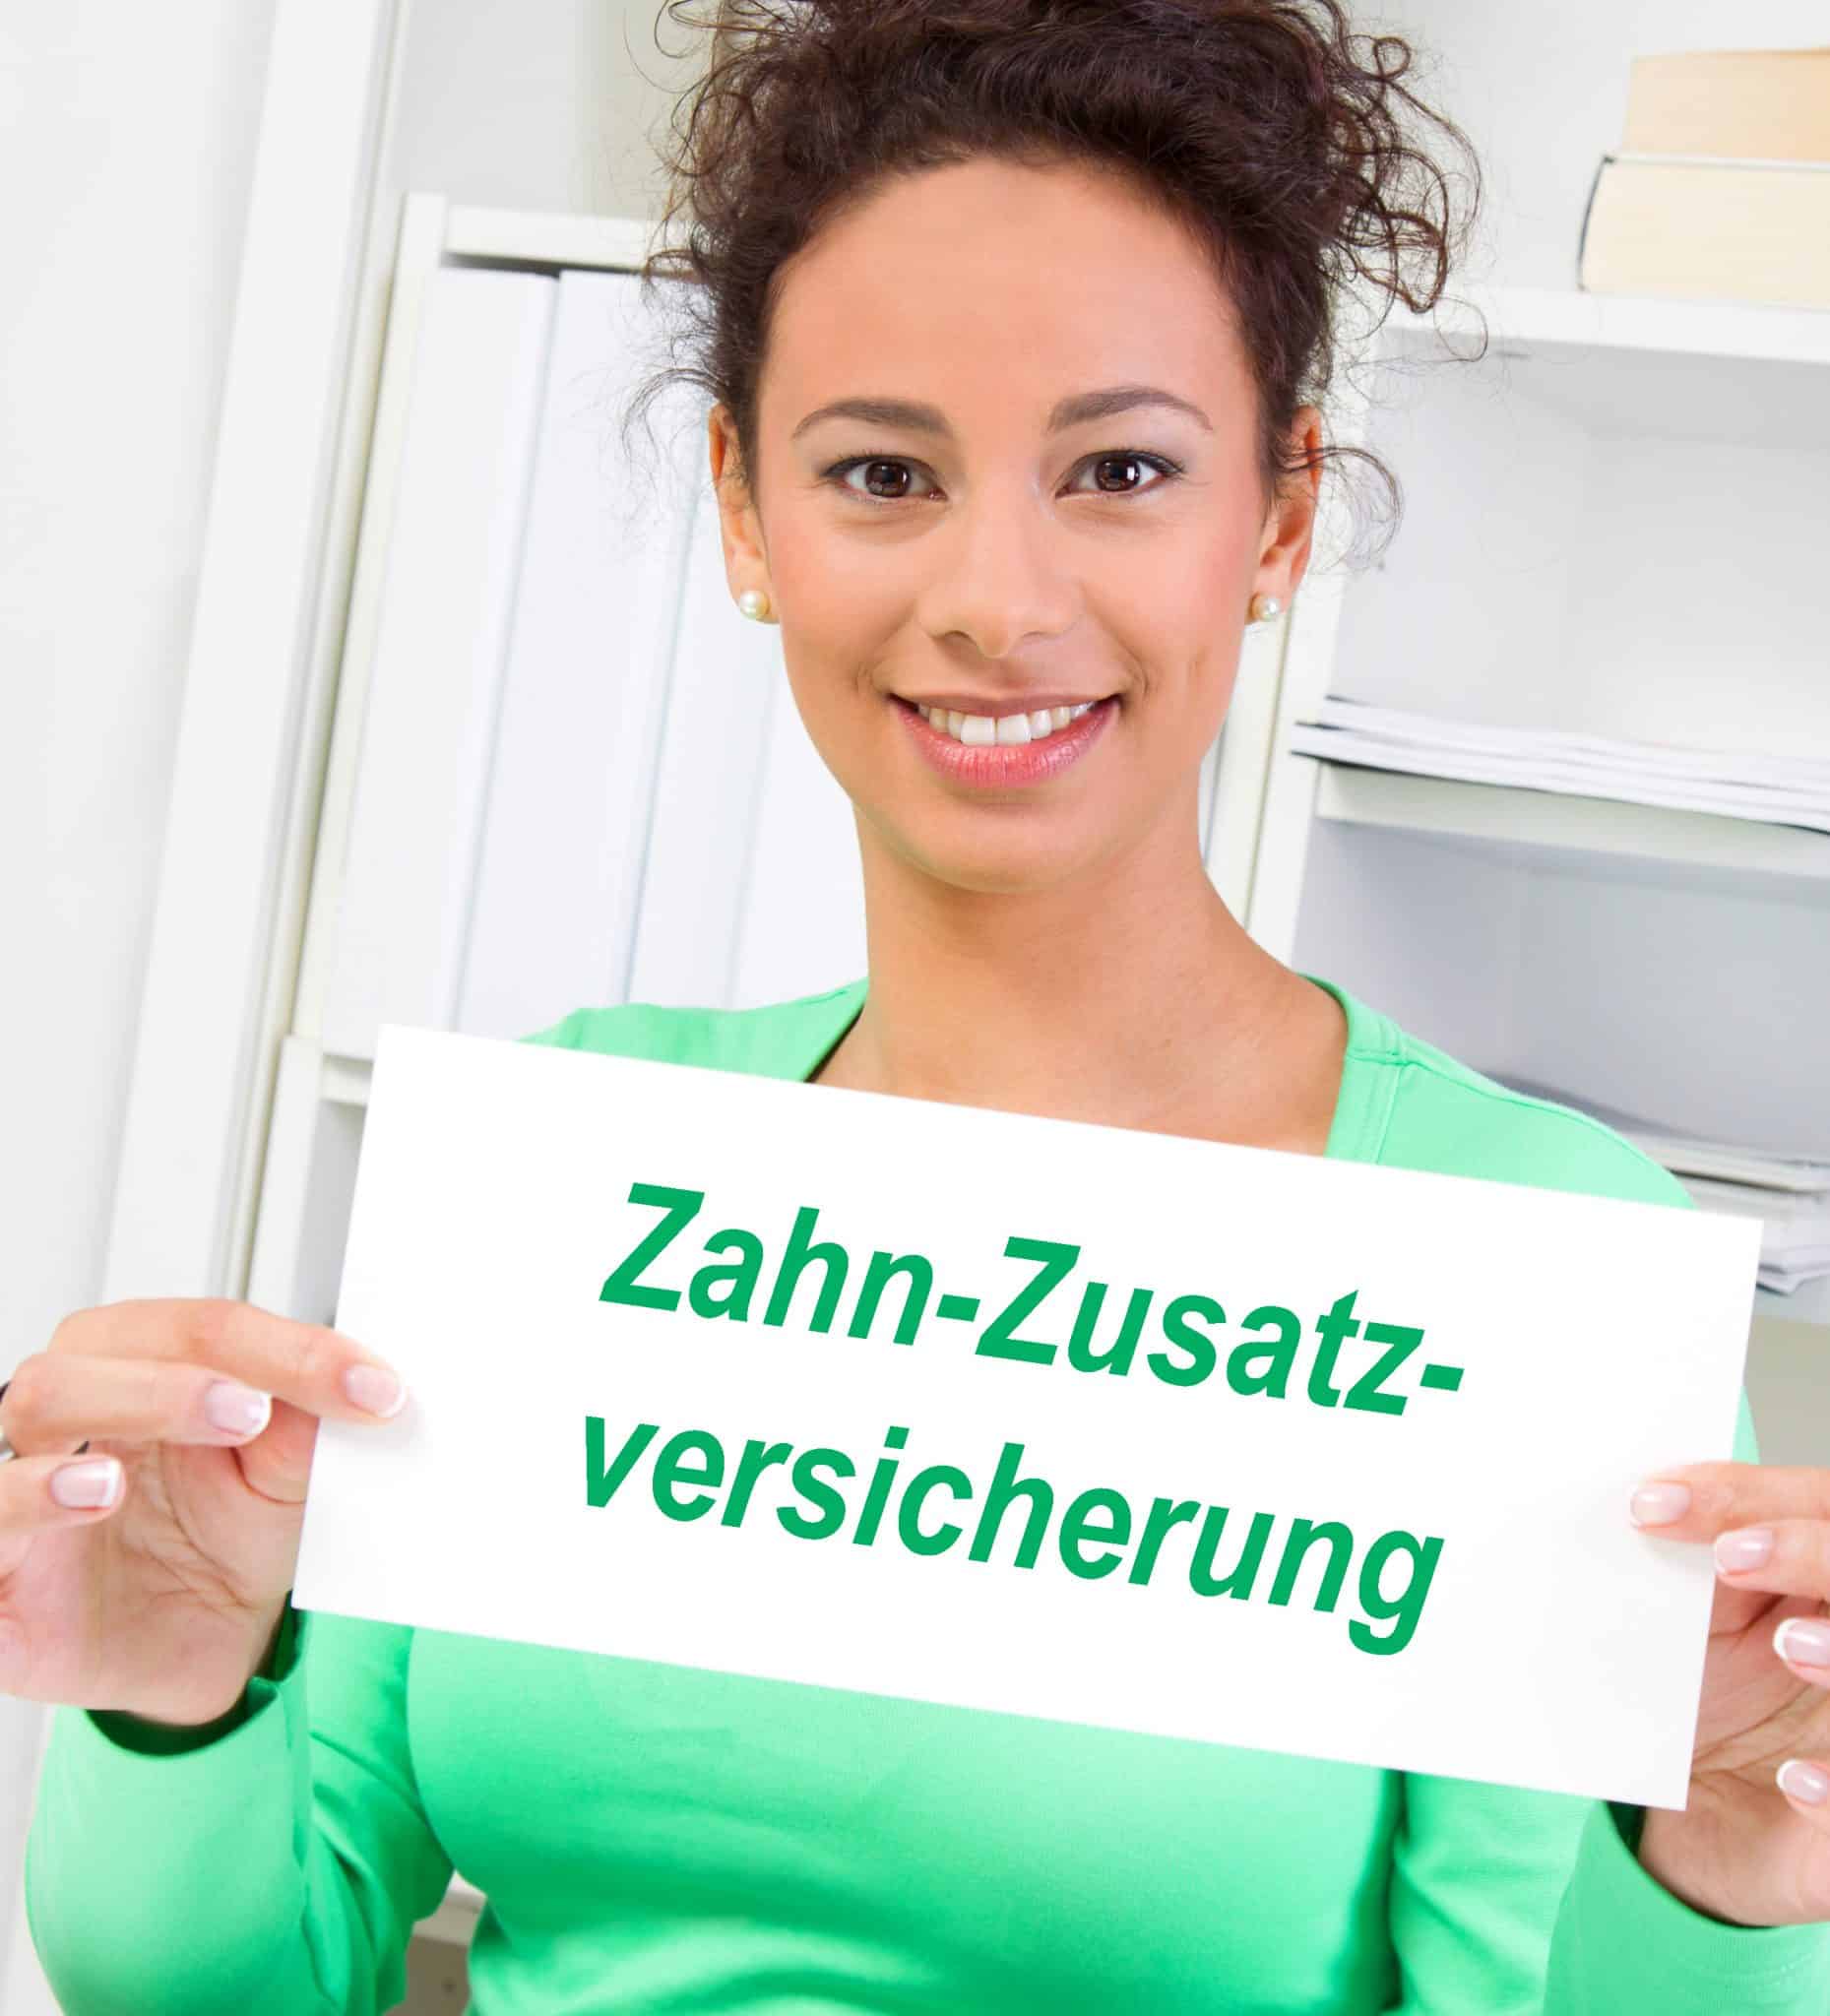 Eine junge Frau zeigt ein Schild mit dem grünem Text Zahn-Zusatzversicherung vor sich.